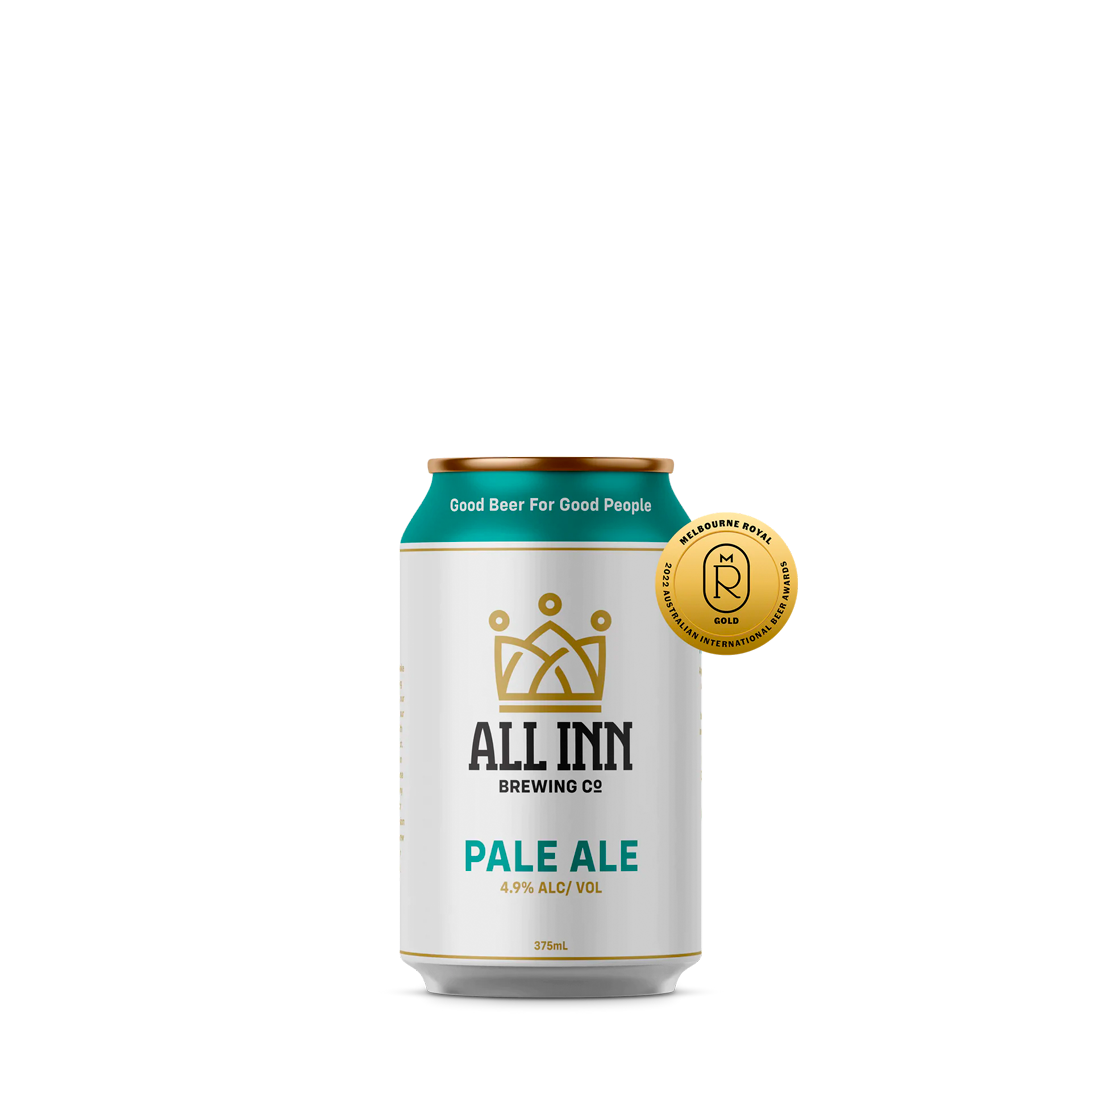 All Inn Pale Ale